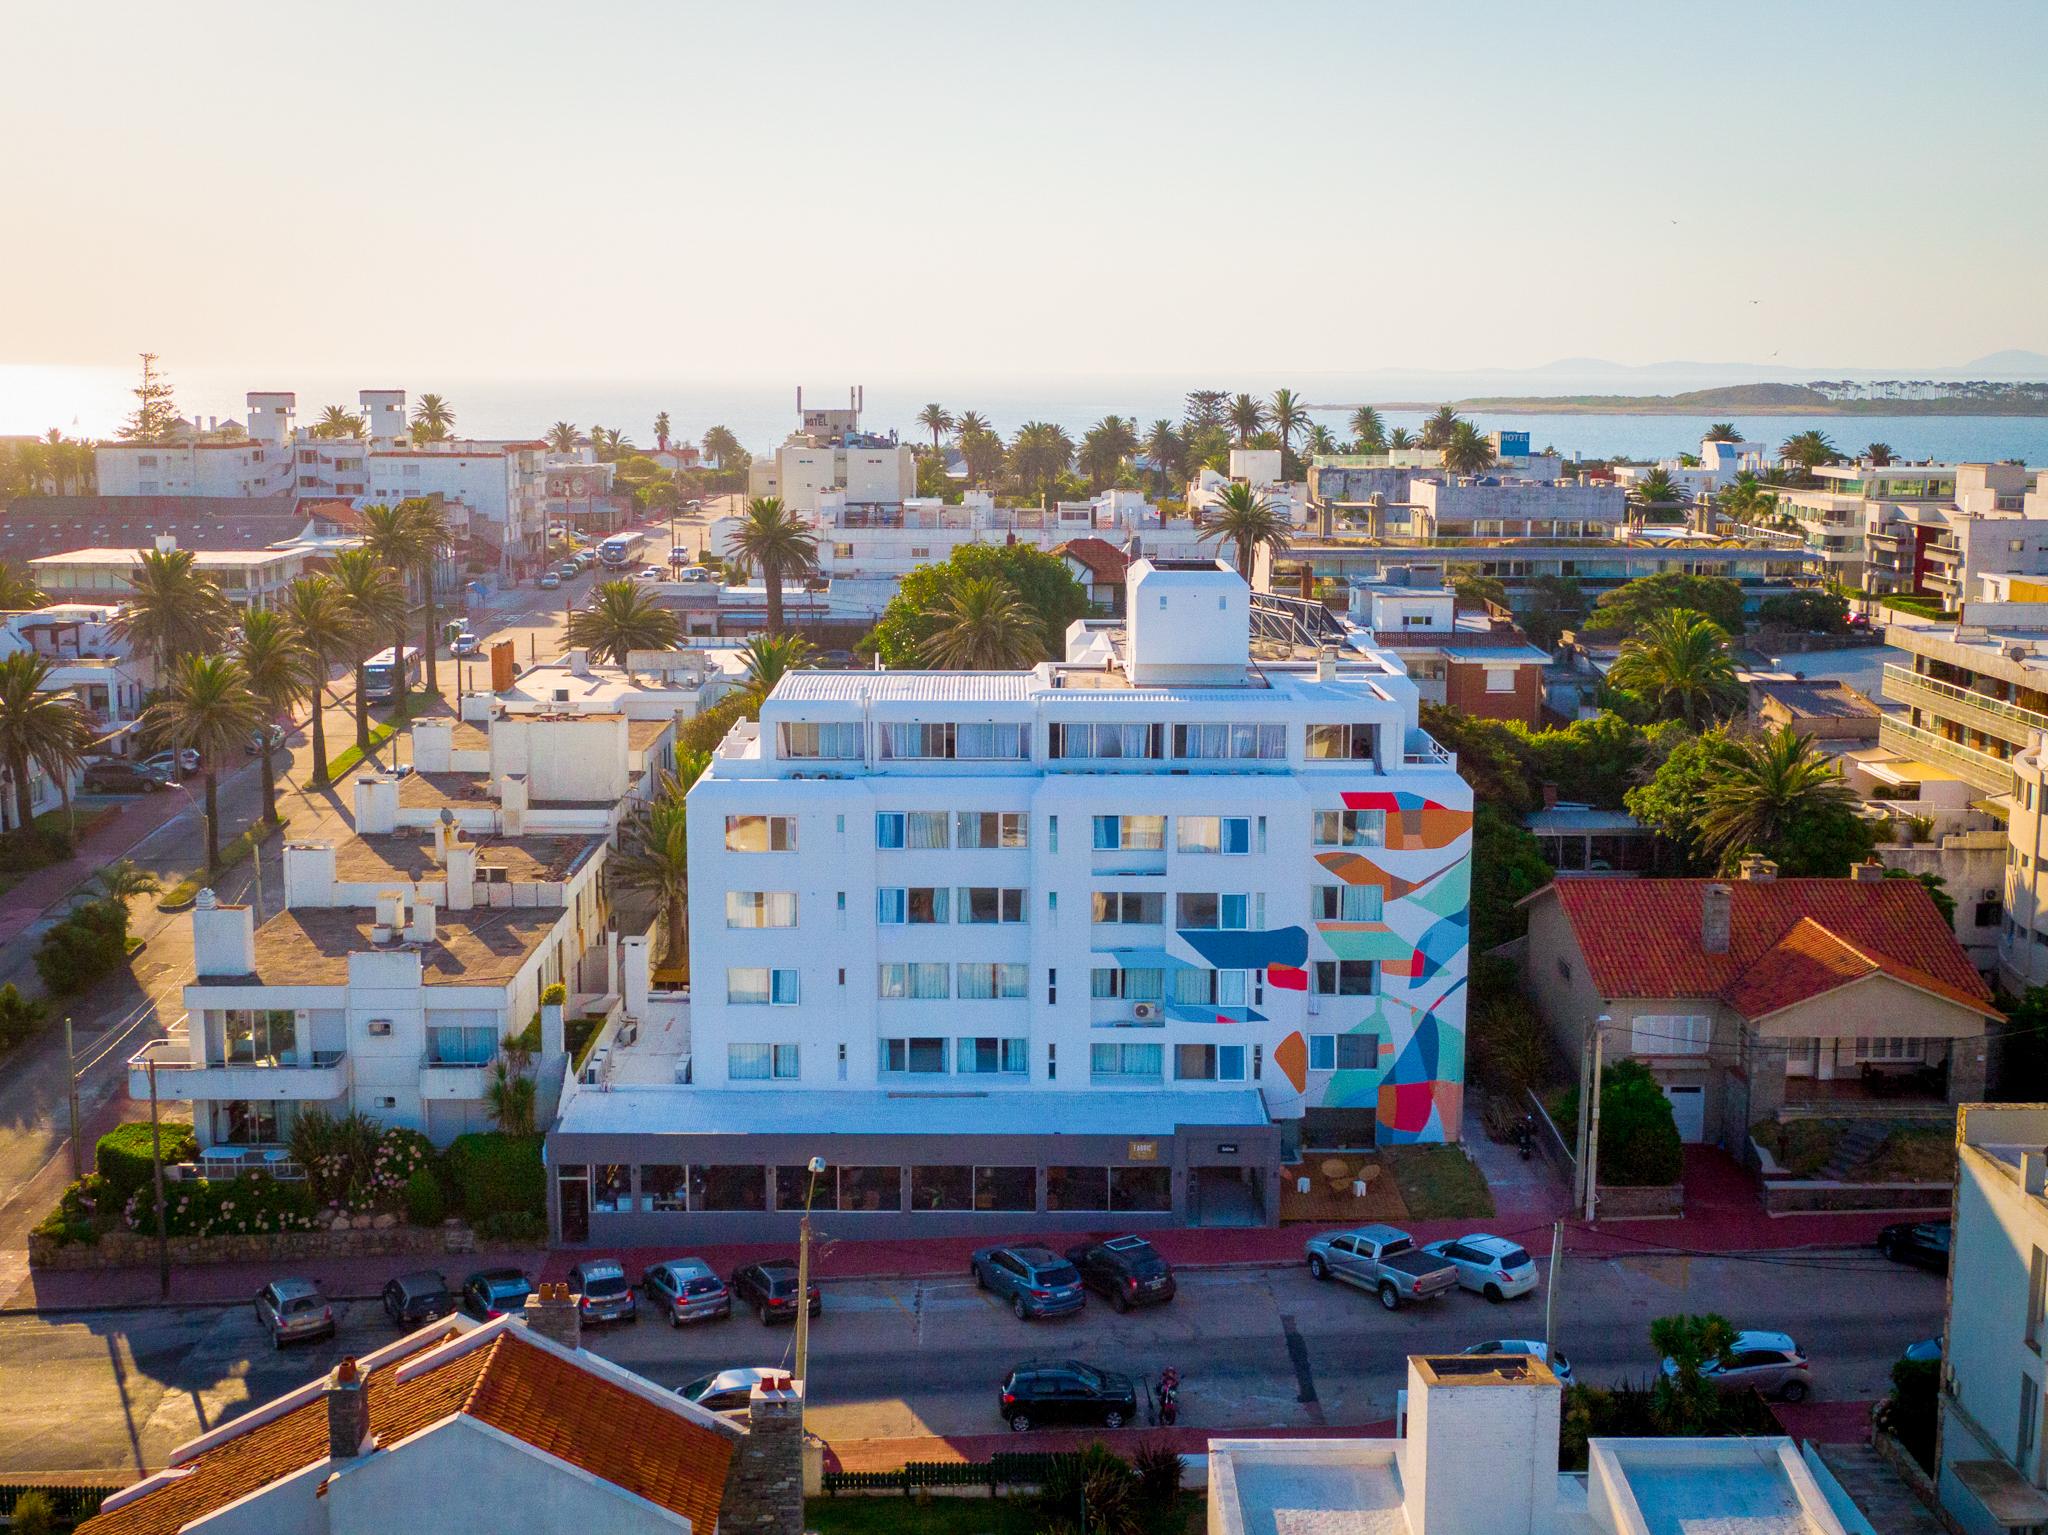 VIAJERO Posada & Hostel Punta del este, Punta del Este – Updated 2023 Prices